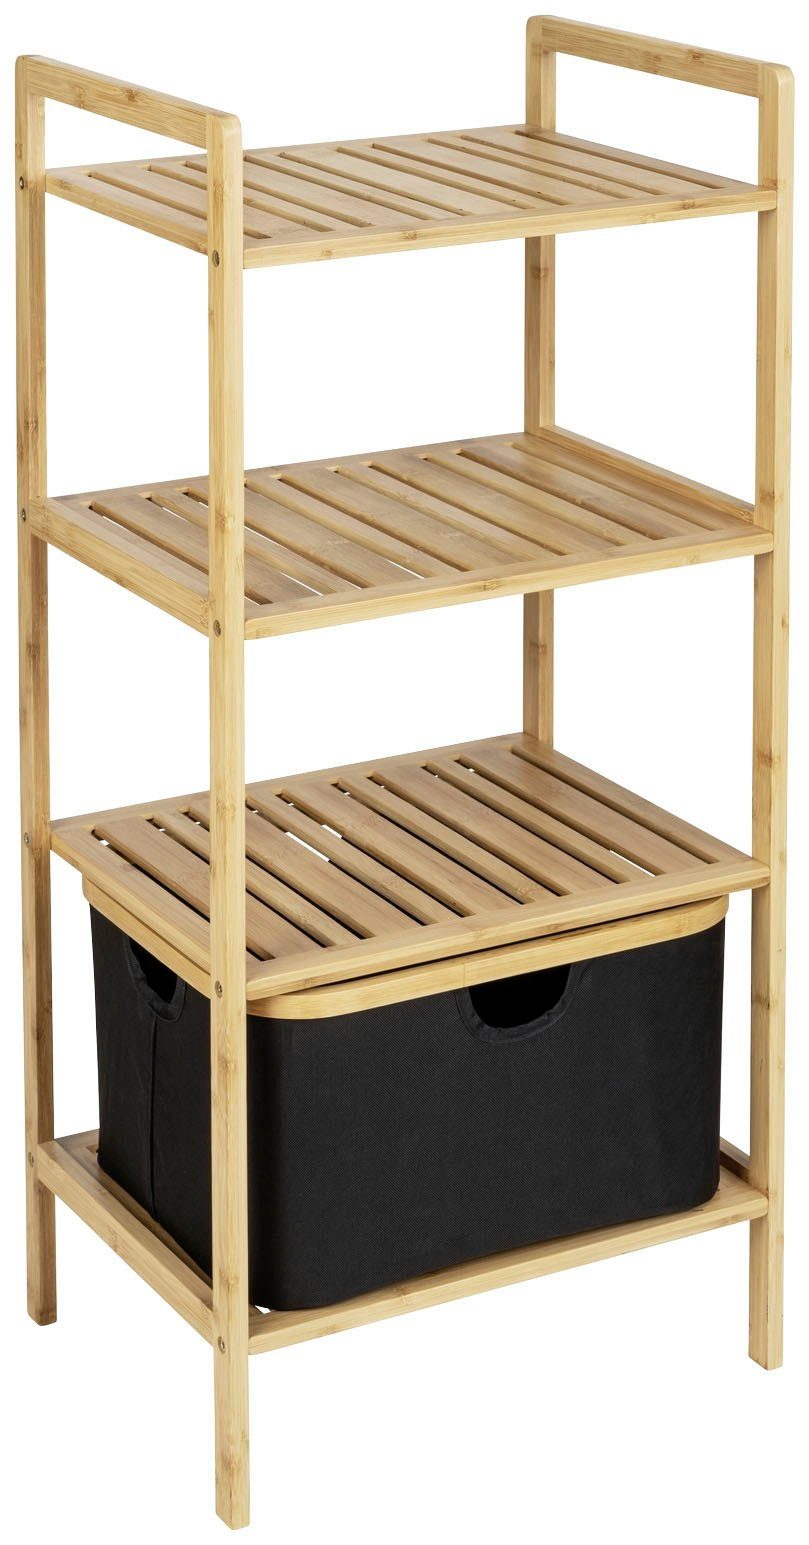 WENKO Regal Ecori, mit 3 Etagen, Stilvolle Farb- und Material-Kombination;  weitere Ecori-Möbel erhältlich